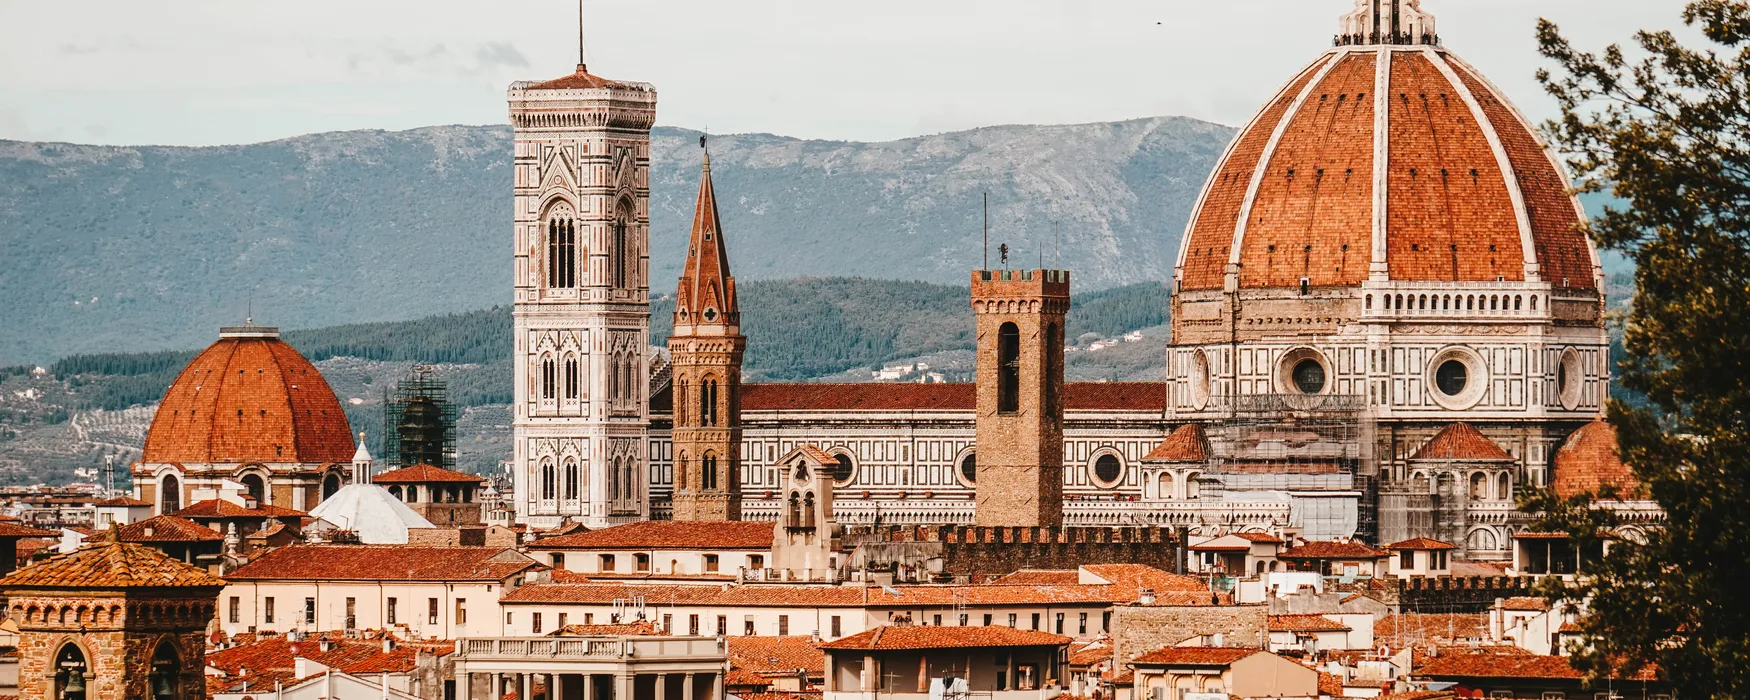 Wakacje we Włoszech: odwiedź piękne tarasy na Viewnary